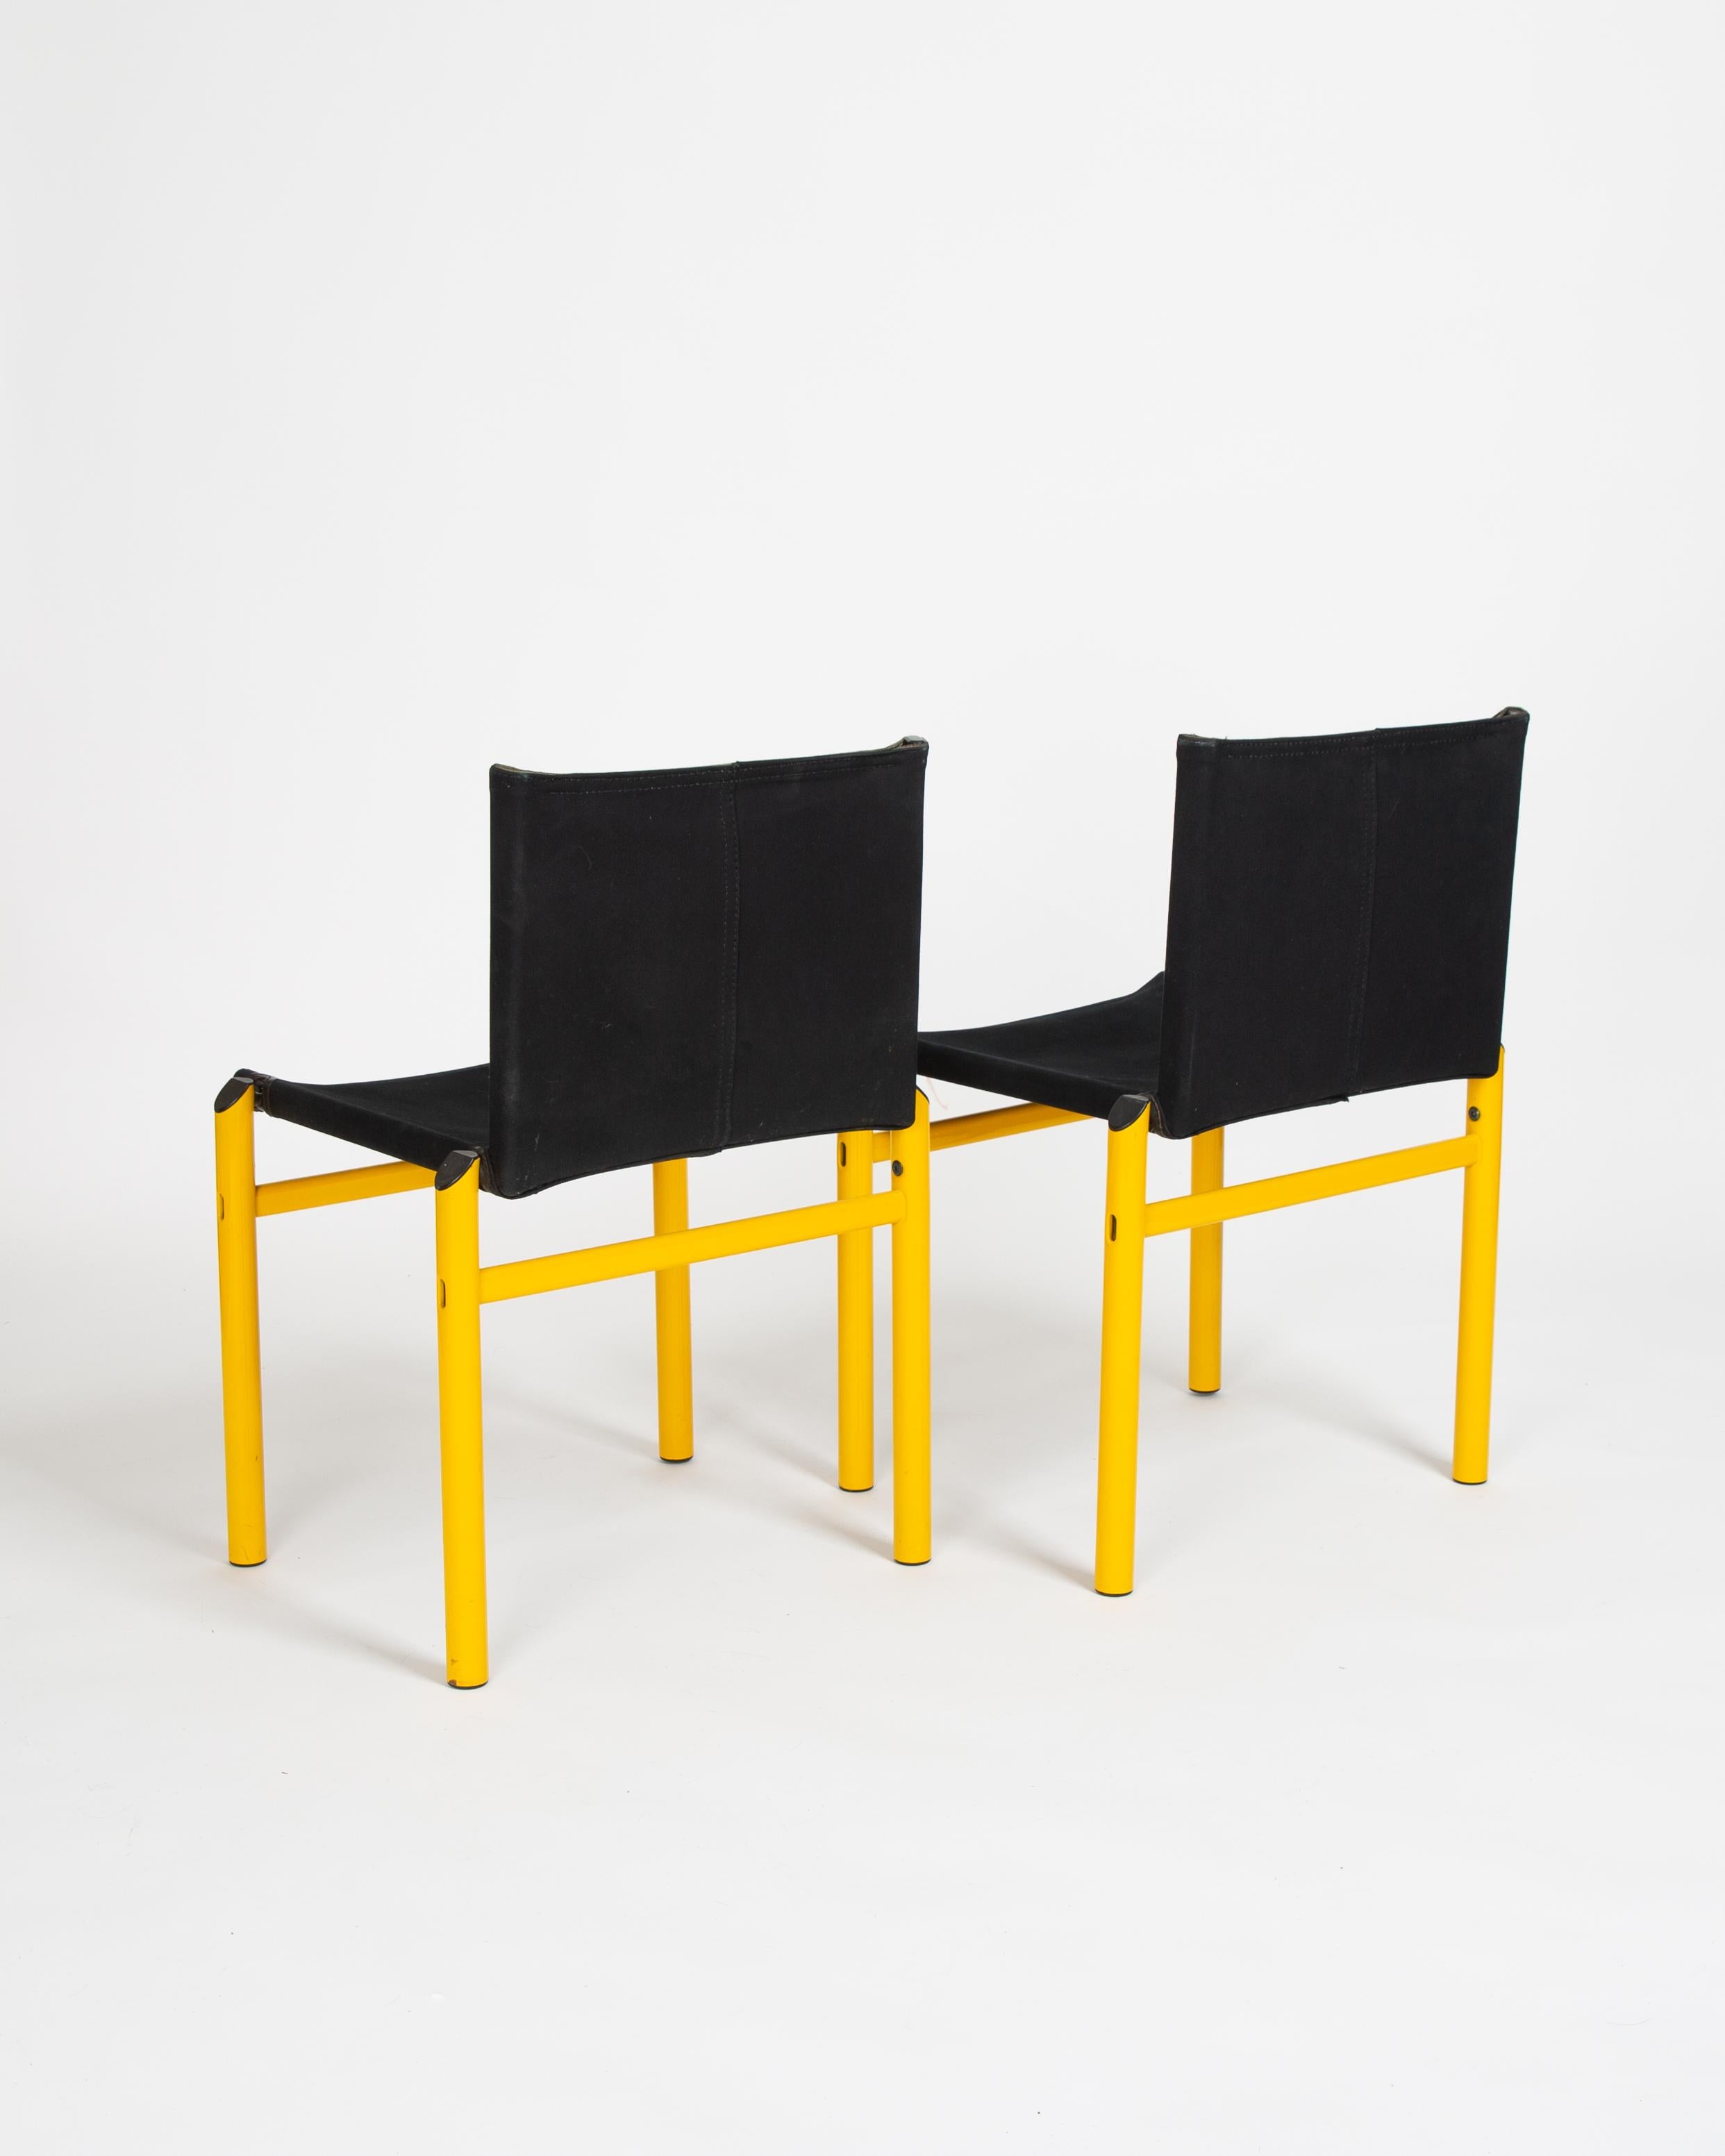 Ein Paar äußerst seltene Afra & Tobia Scarpa Mastro Stühle. 

Das Mastro-Design basiert auf demselben Konstruktionsprinzip wie der Monk-Stuhl, jedoch in einem neuen Dialekt, einer neuen Form und einer neuen Haptik, wie sie nur die 1980er Jahre